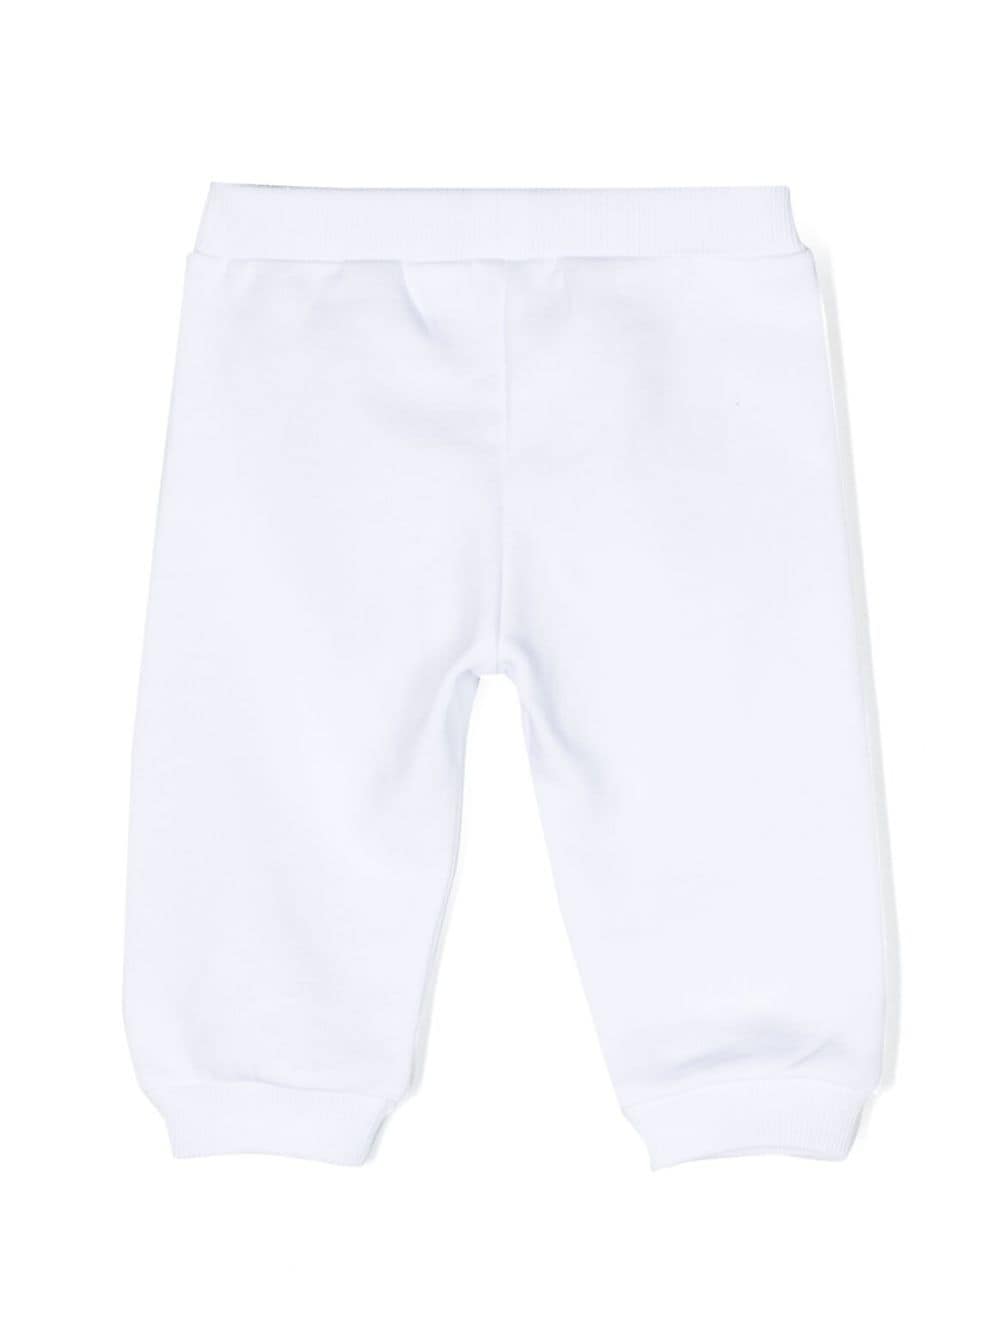 Pantalone bianco neonato con stampa